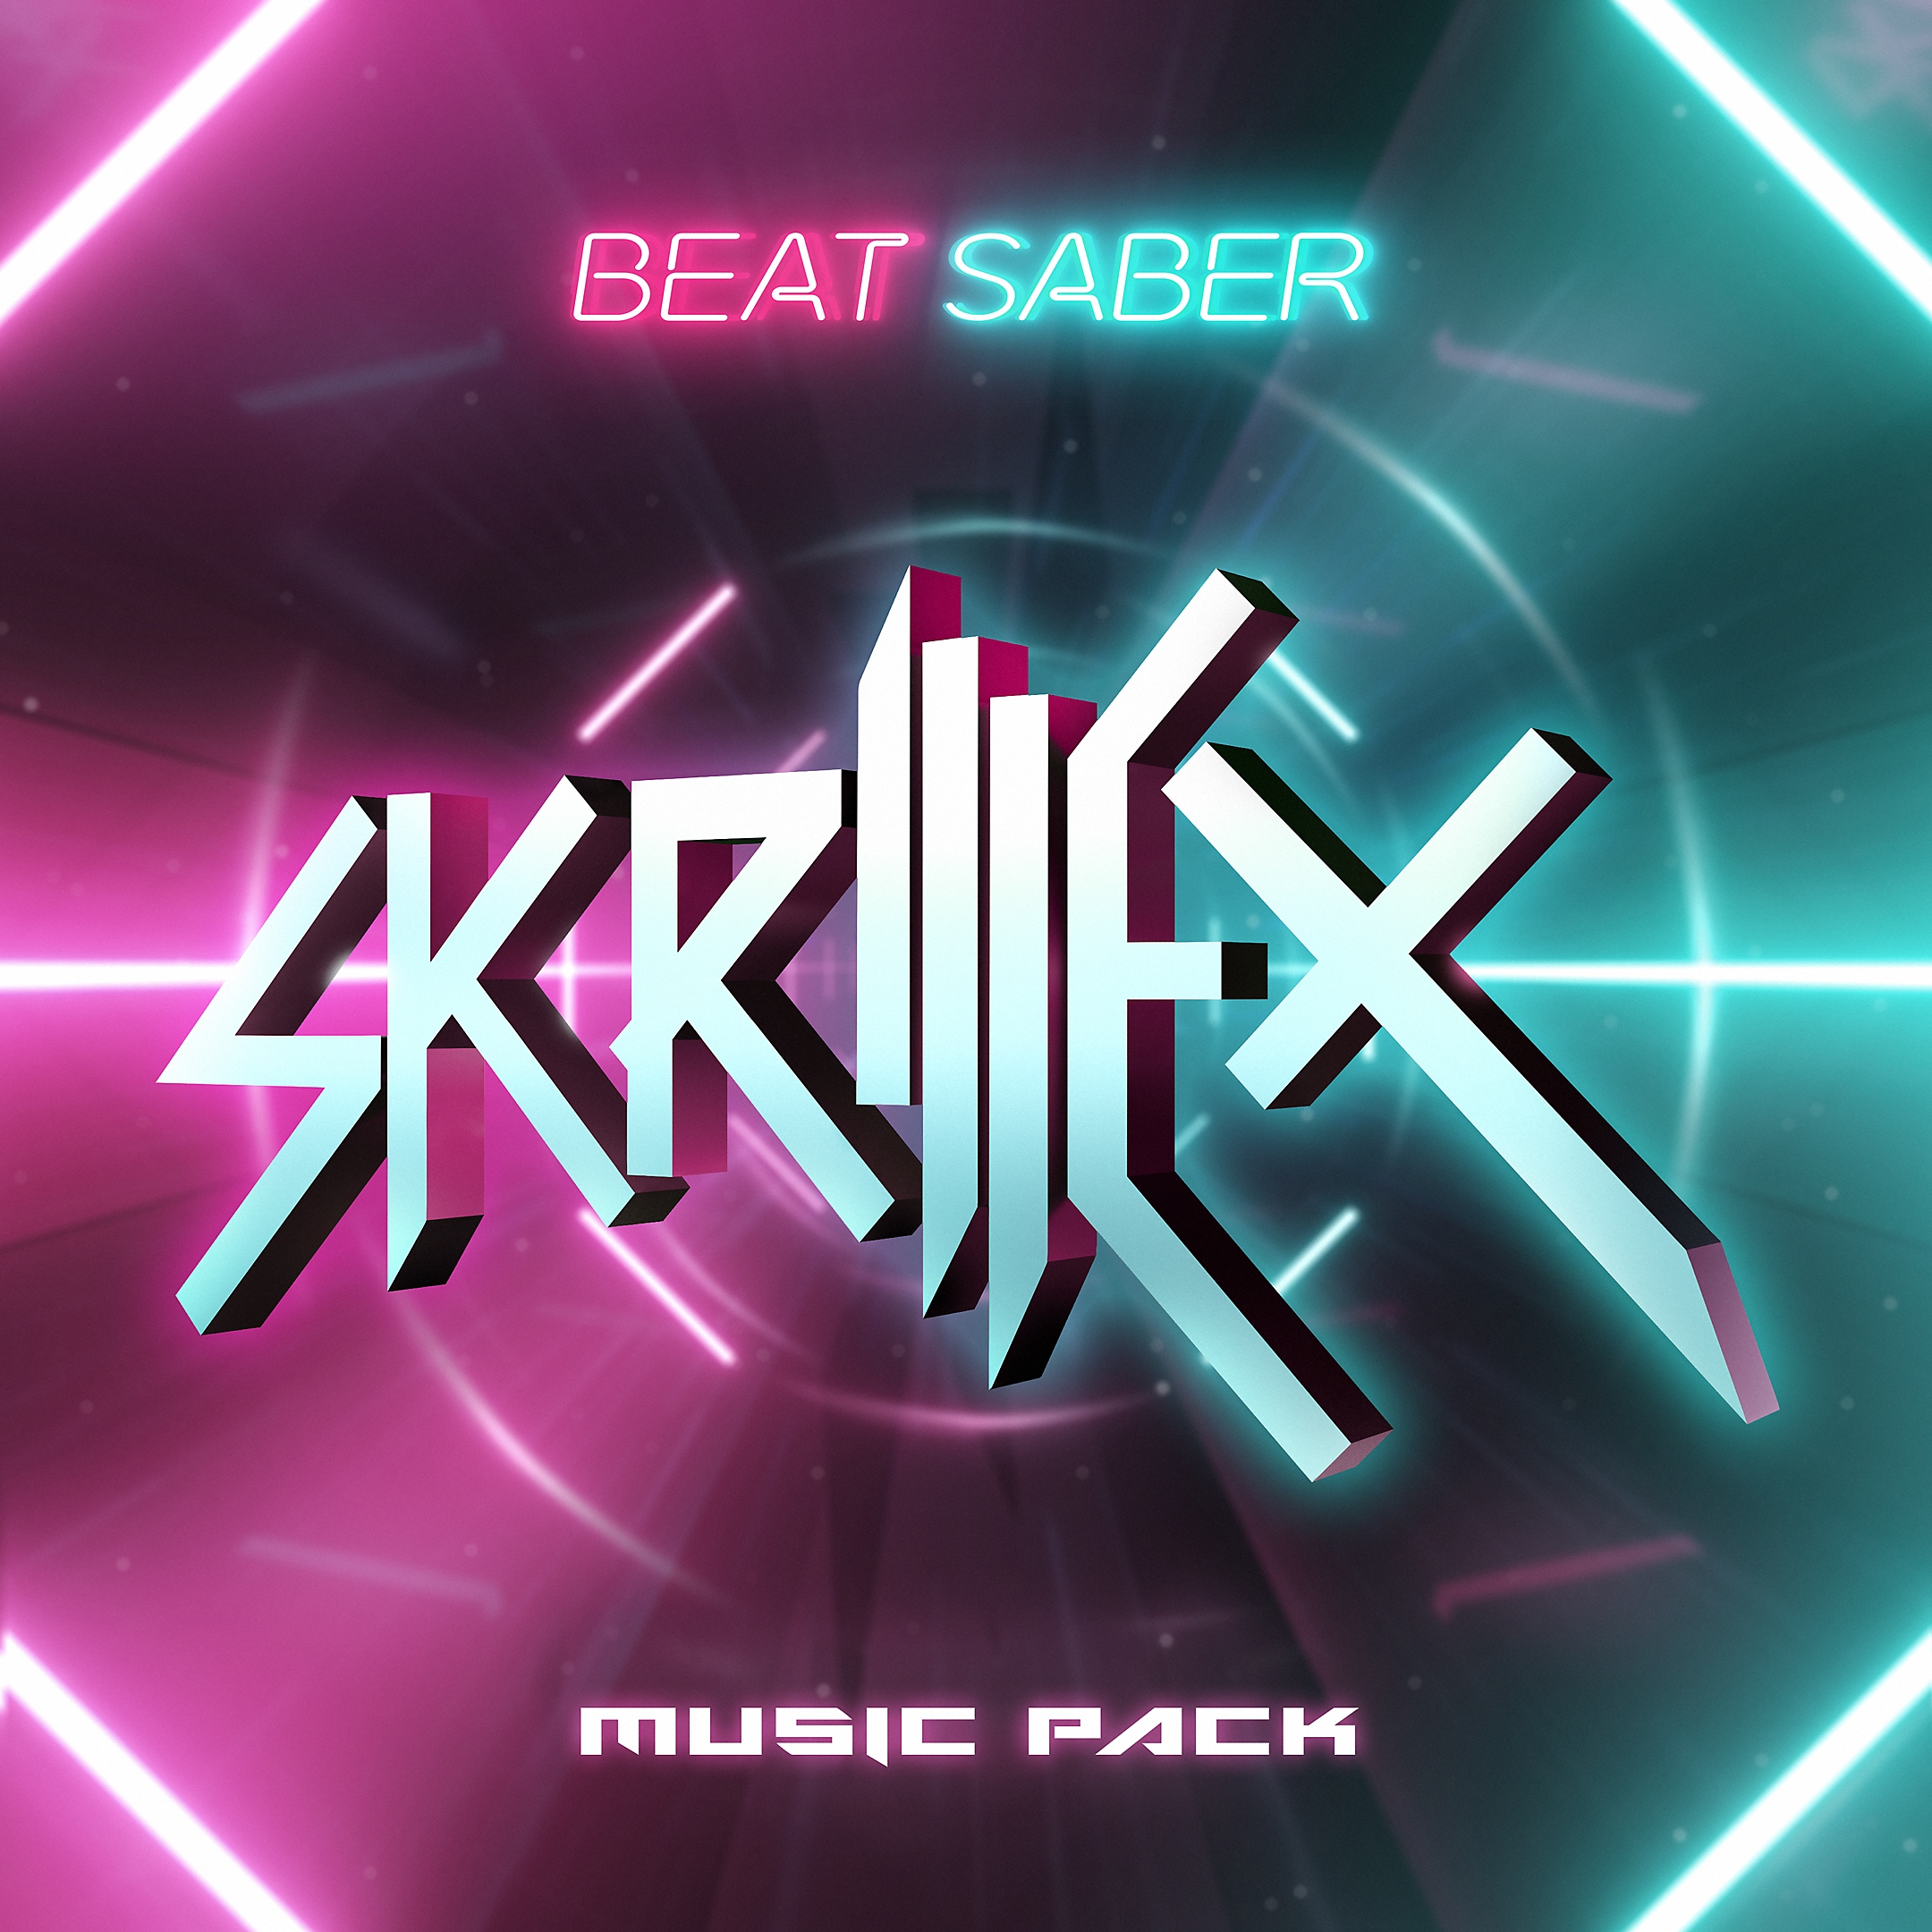 Pacchetto musicale di Skrillex per Beat Saber